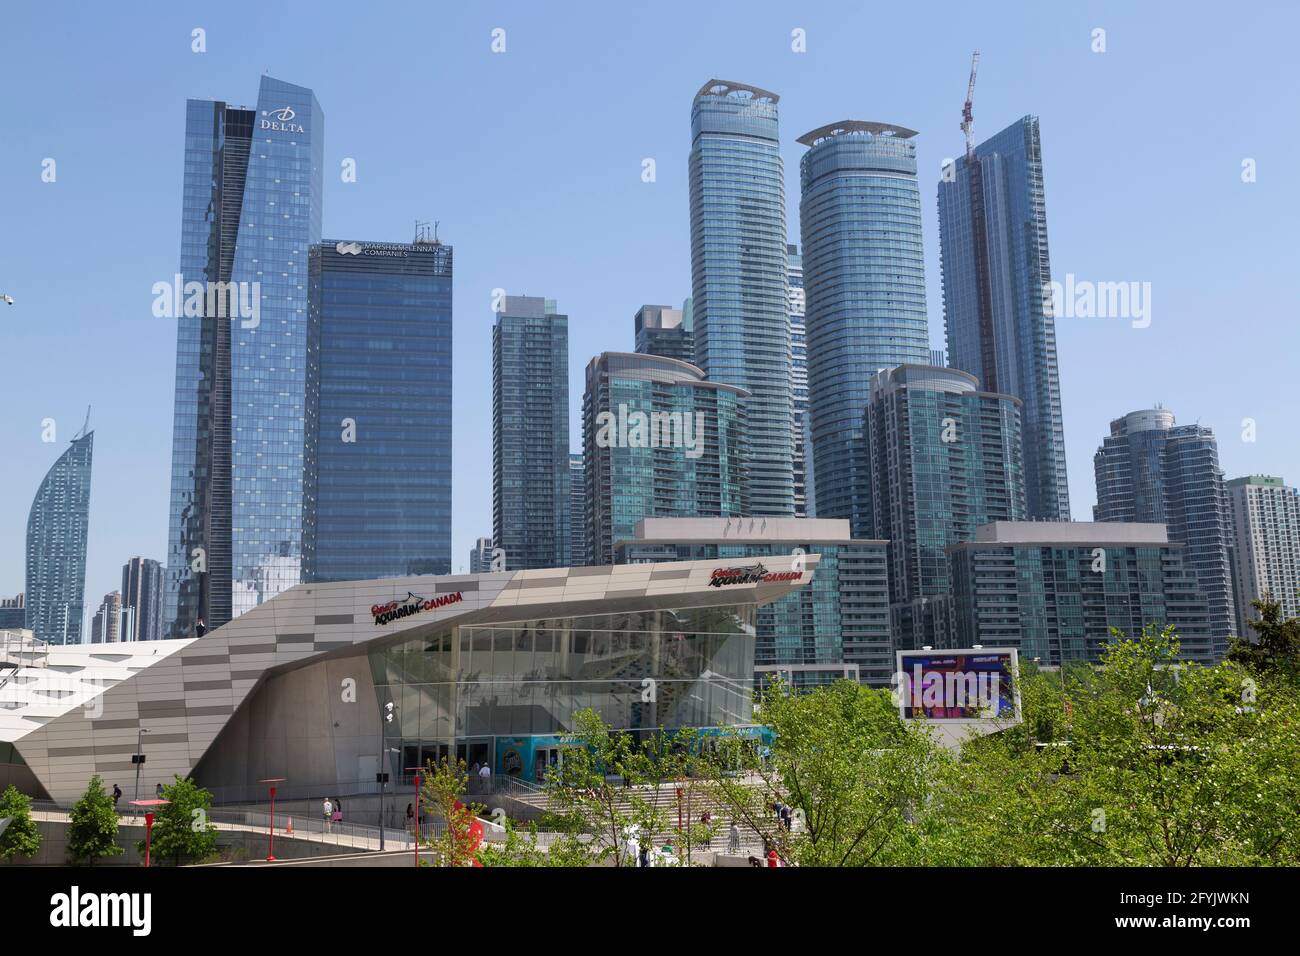 Edificios en el centro de Toronto en Ontario, Canadá. Ripley's Aquarium of Canada está en primer plano. Foto de stock